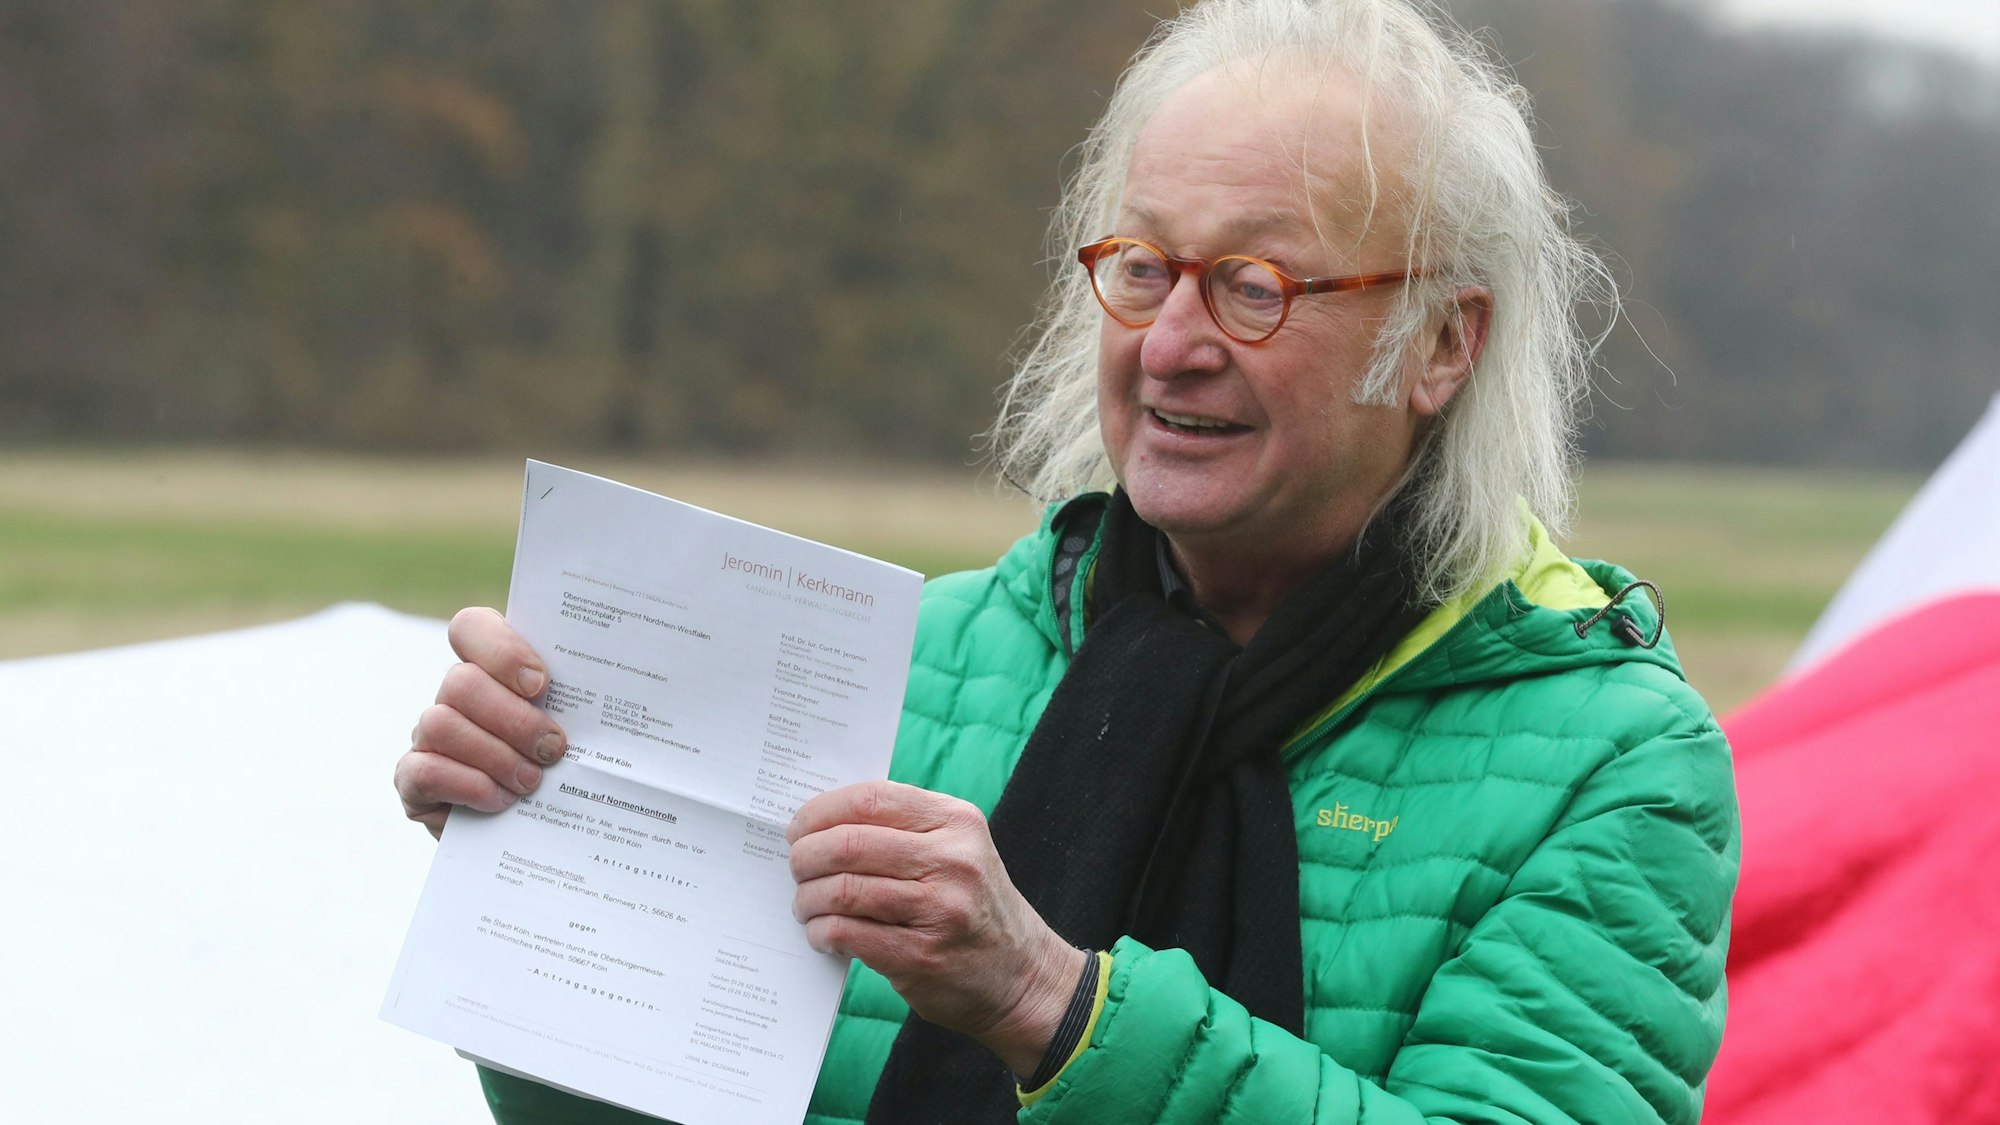 Friedmund Skorzenski von der Bürgerinitiative „Grüngürtel für Alle“ präsentiert die Klageschrift gegen den geplanten Ausbau des 1. FC Köln.